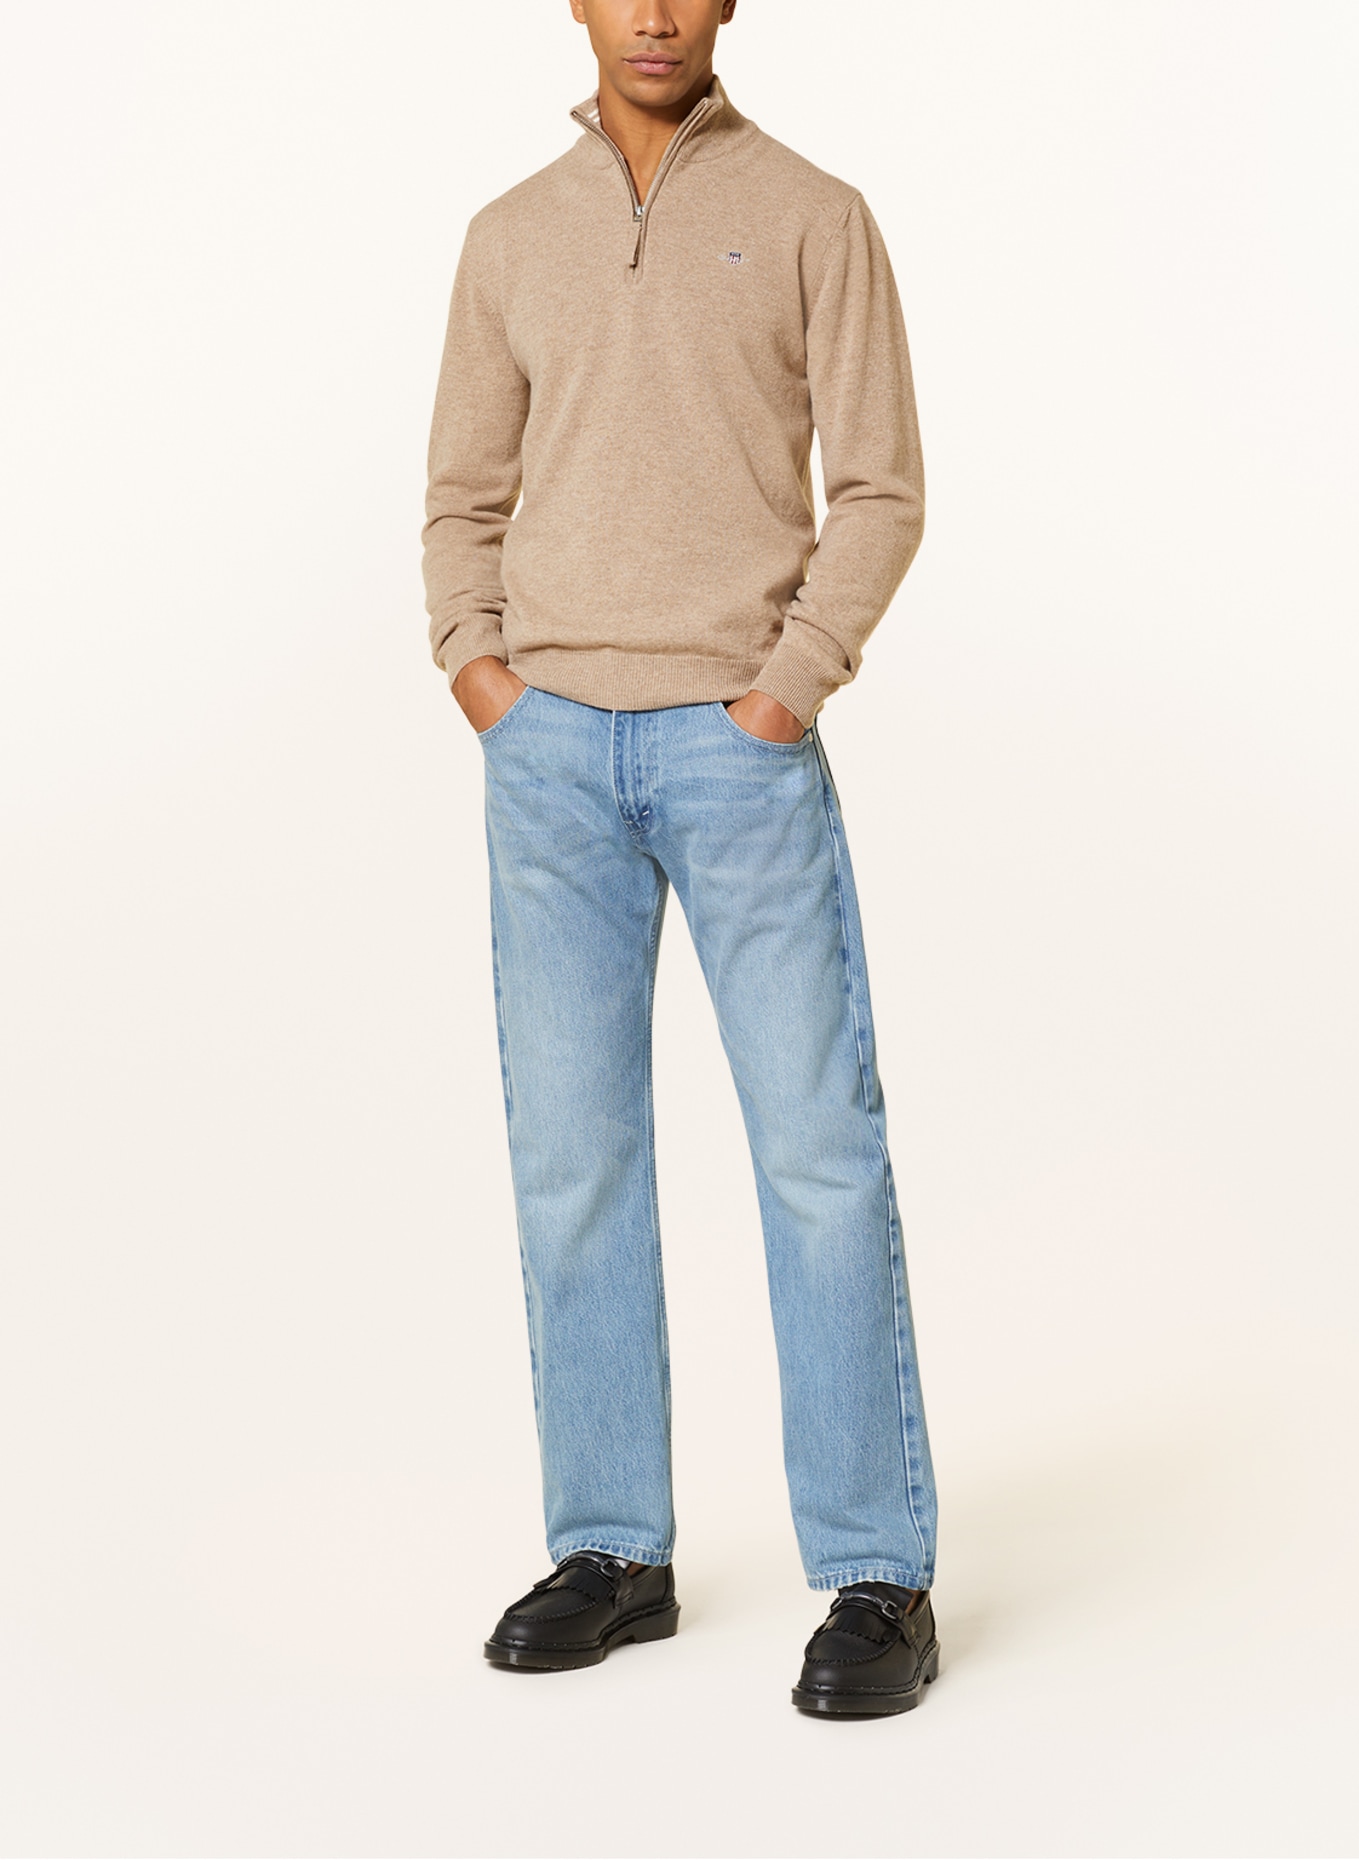 GANT Half-zip sweater, Color: BEIGE (Image 2)